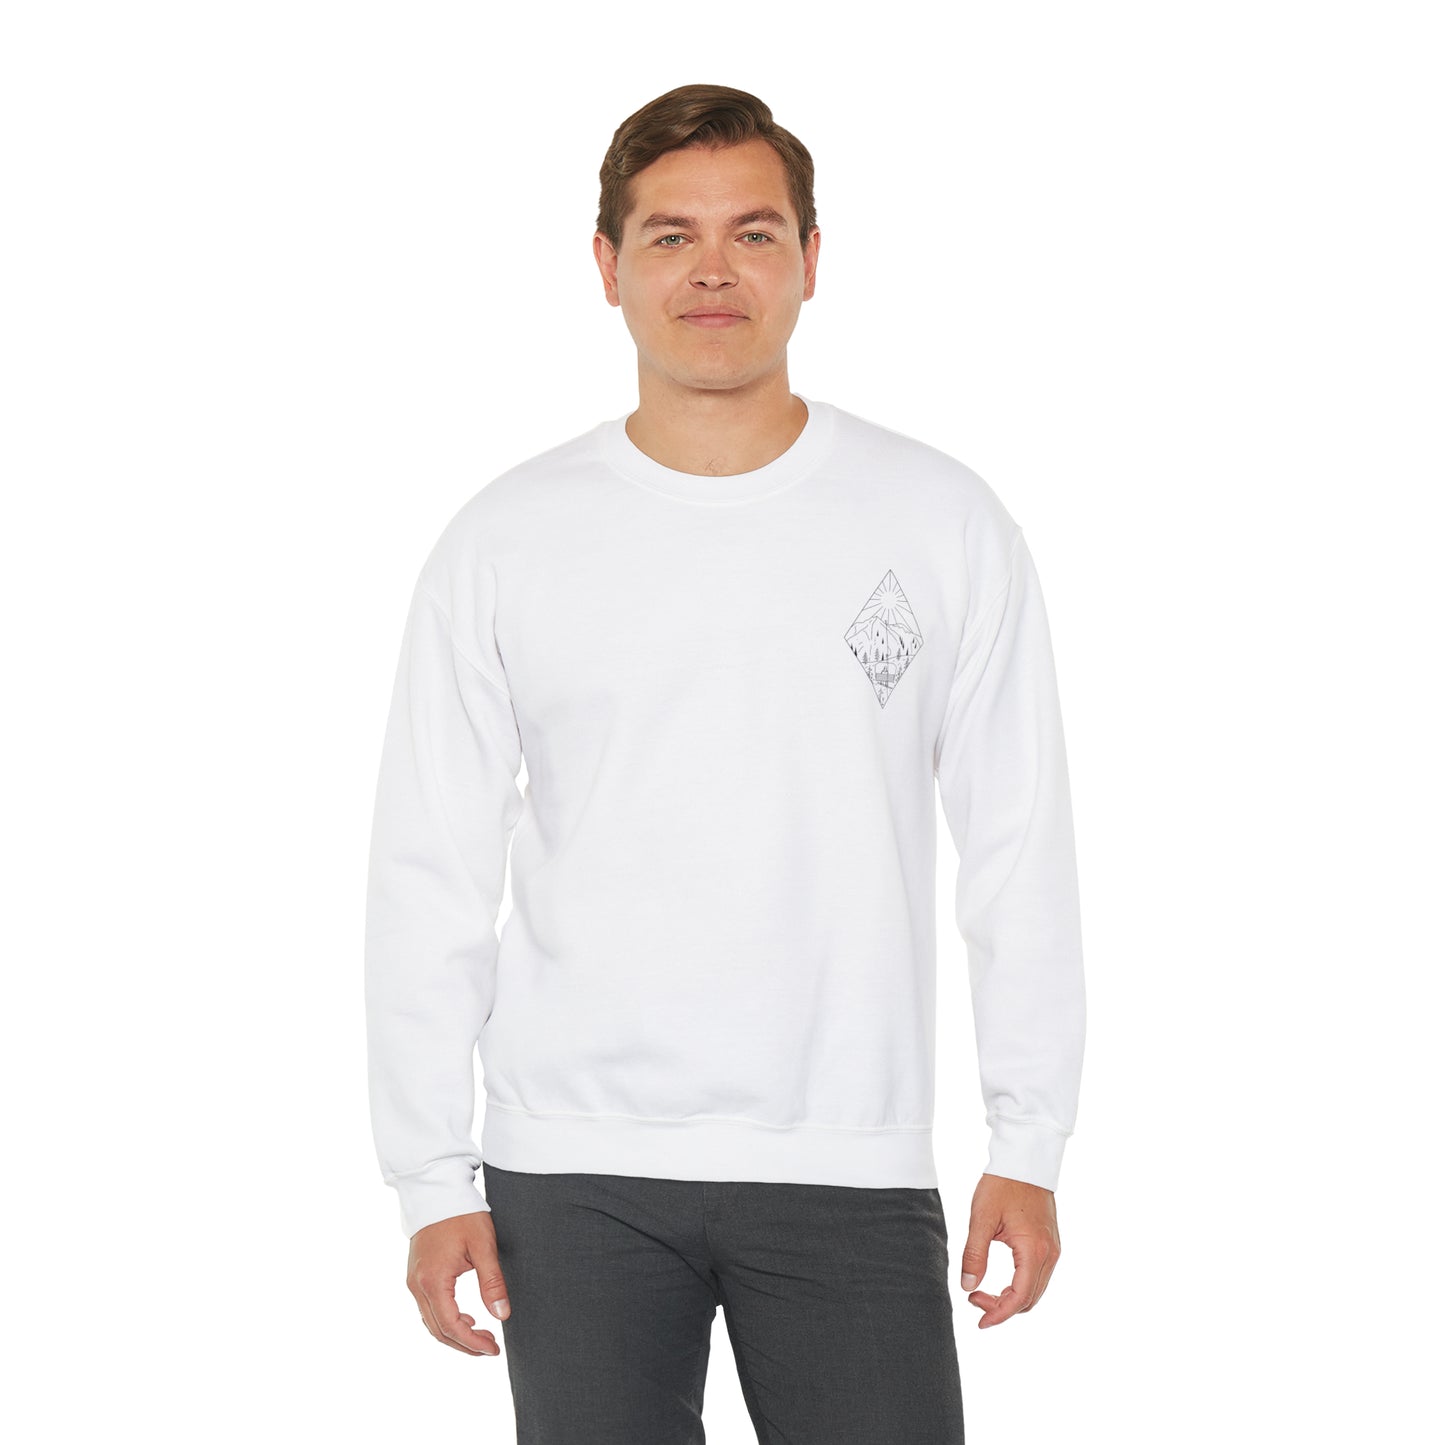 Snowboarder - blk - Unisex Heavy Blend™ Crewneck Sweatshirt